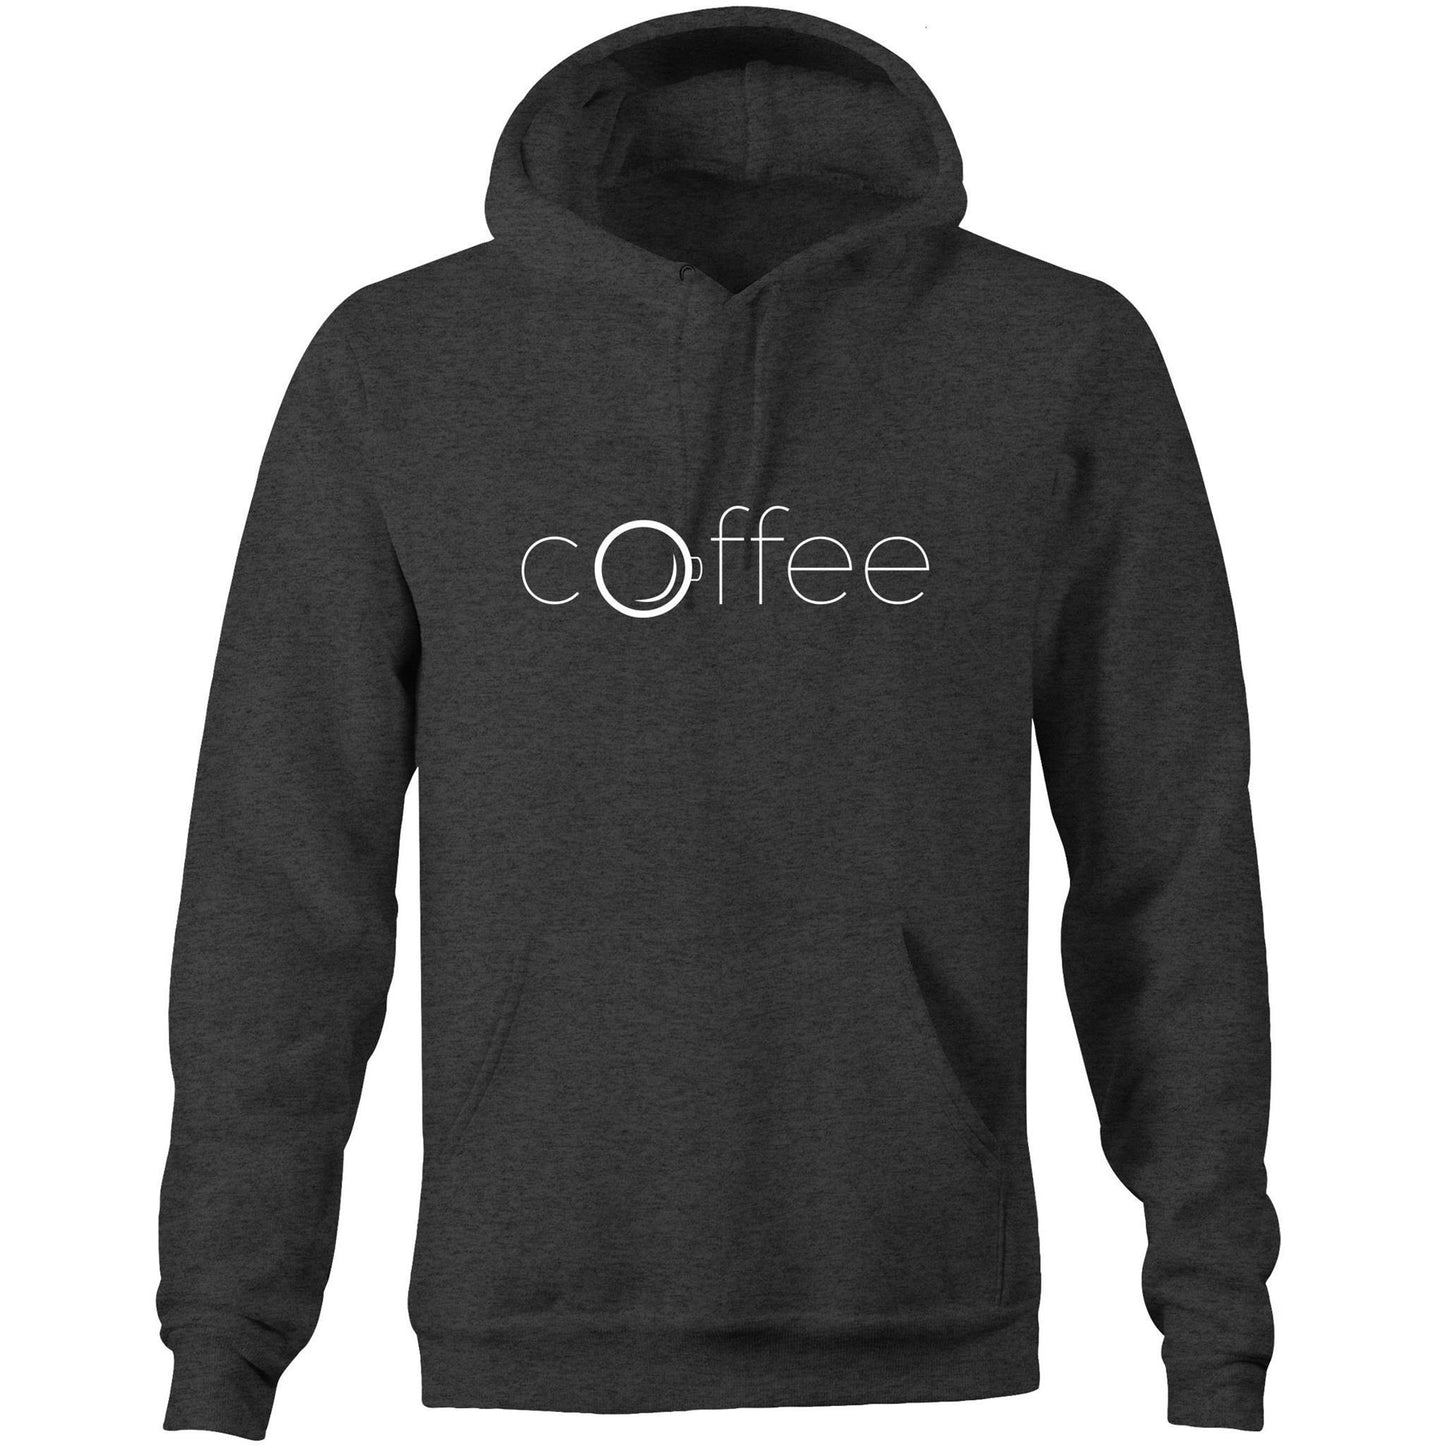 Coffee - Pocket Hoodie Sweatshirt Asphalt Marle Hoodie Coffee Mens Womens